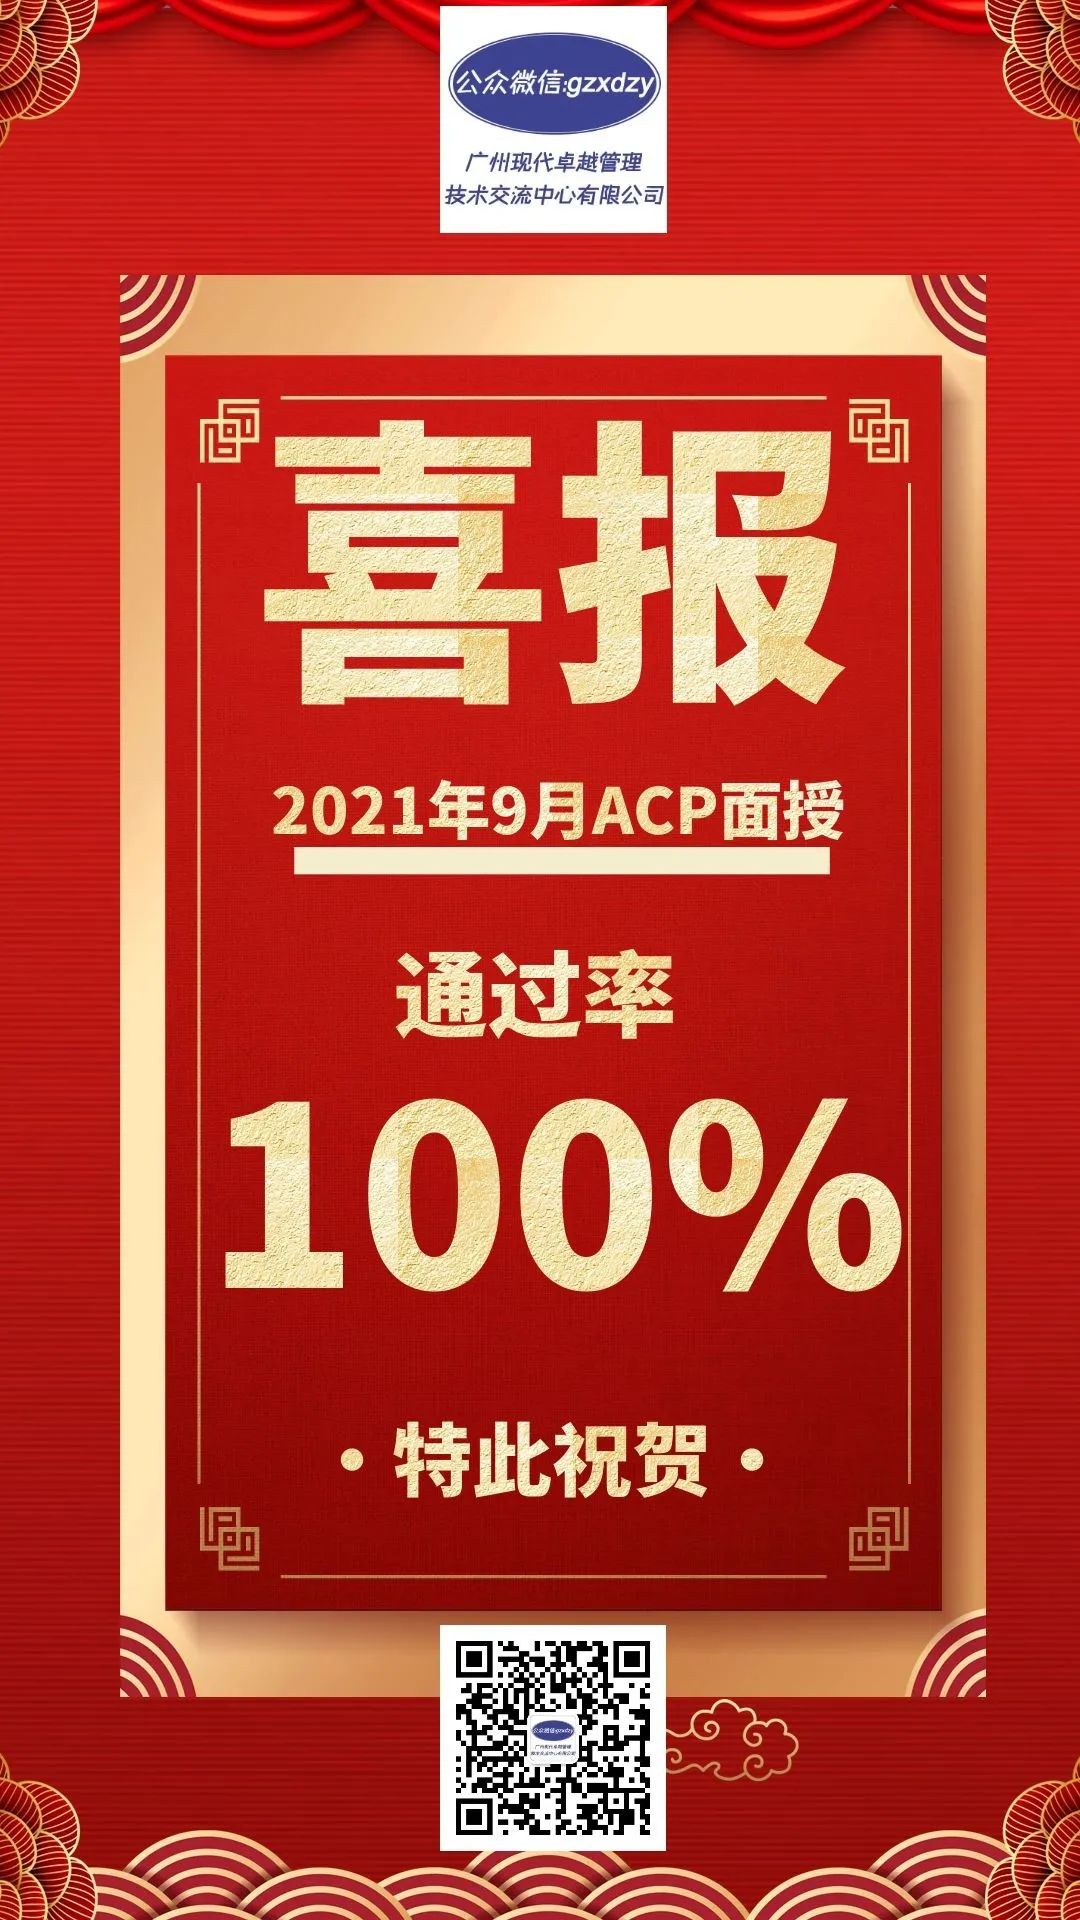 敏捷ACP面授通过率100% 敏捷ACP远程通过率100%